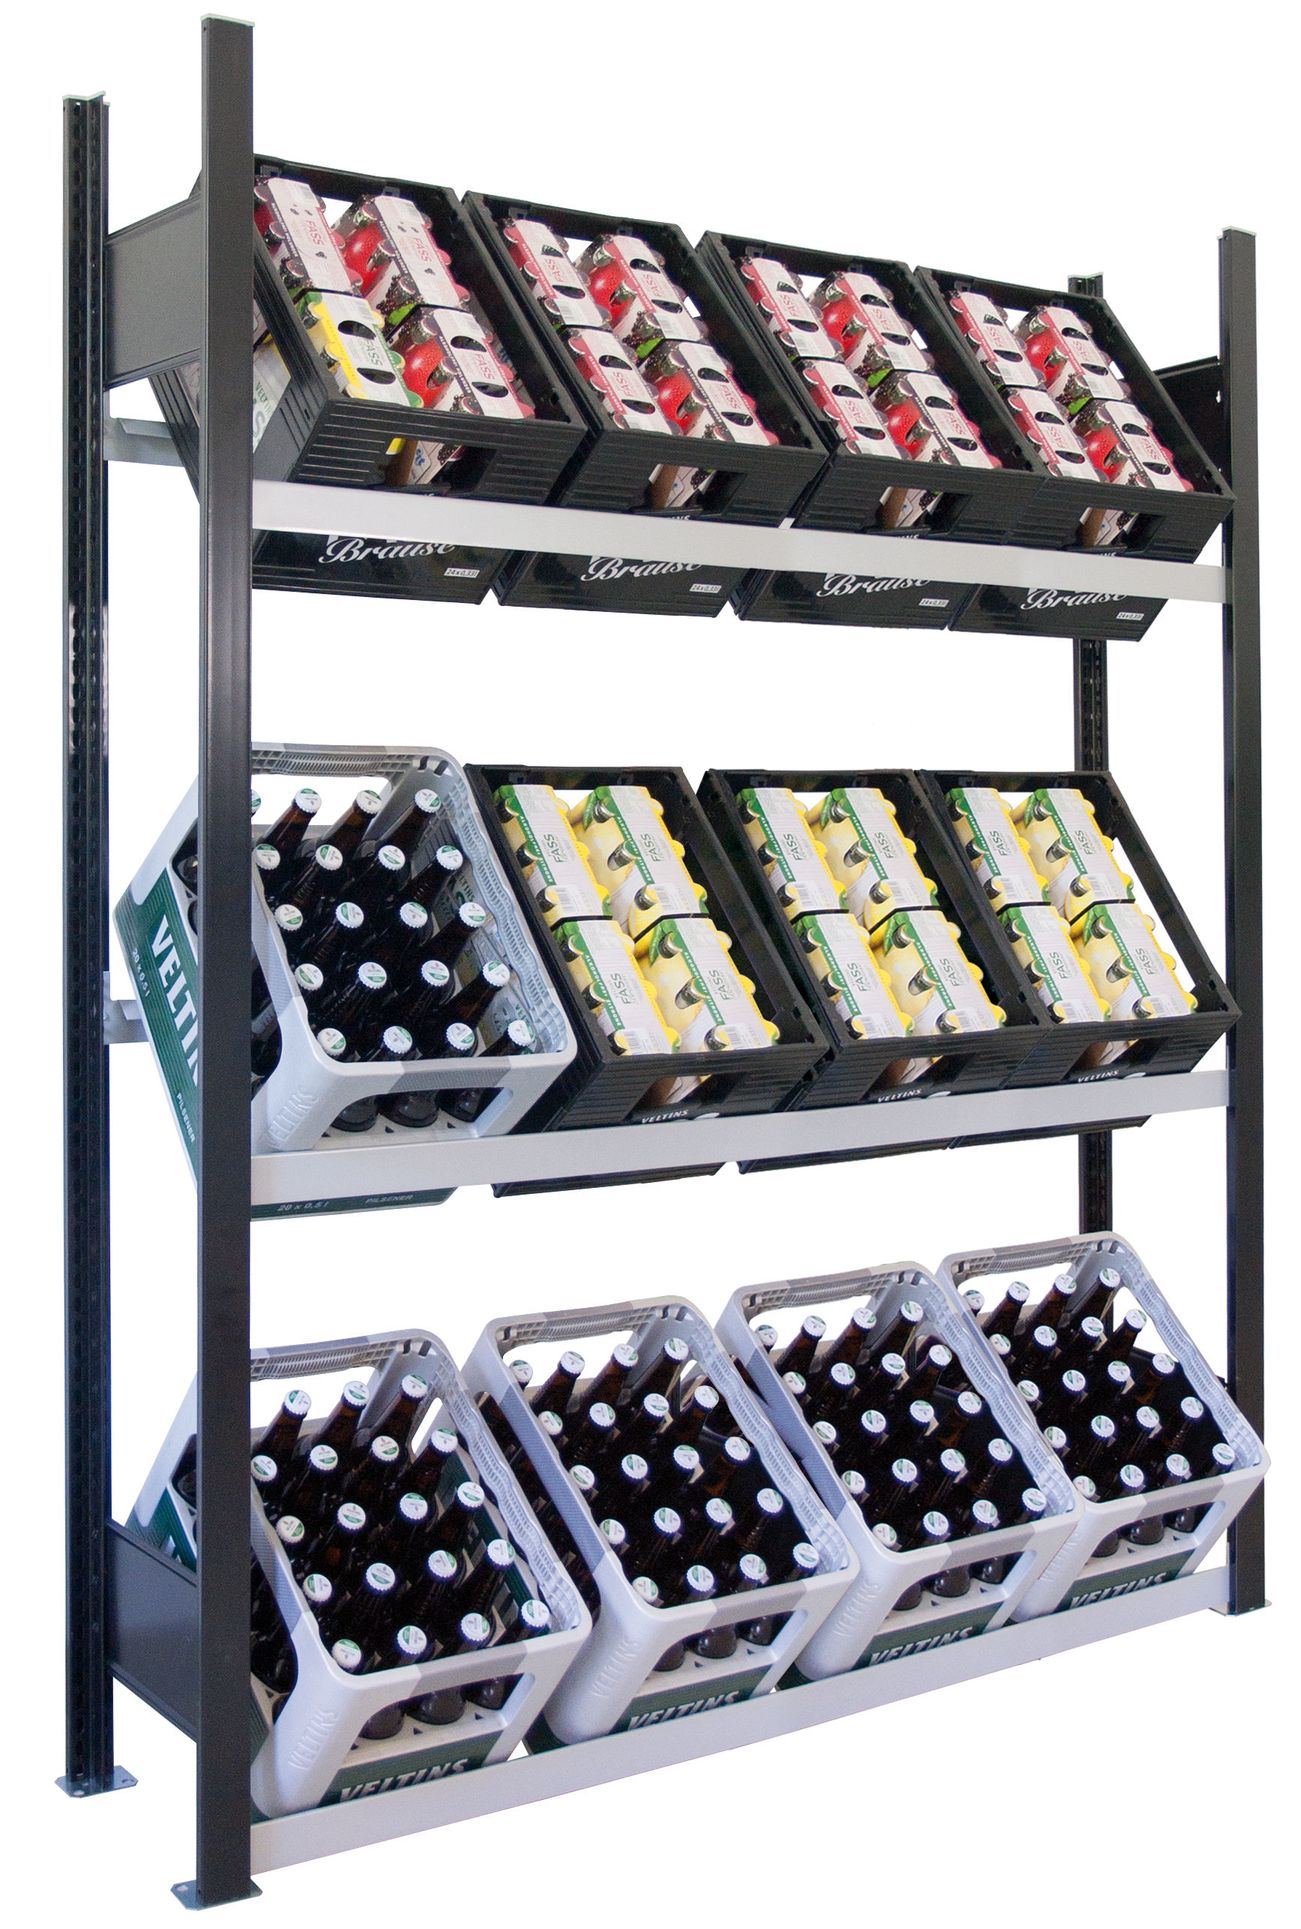 Getränkekistenregal für bis zu 12 Kisten, 180x136x30 cm (HxBxT), Traglast pro Ebene 60 Kg, schwarz-silber